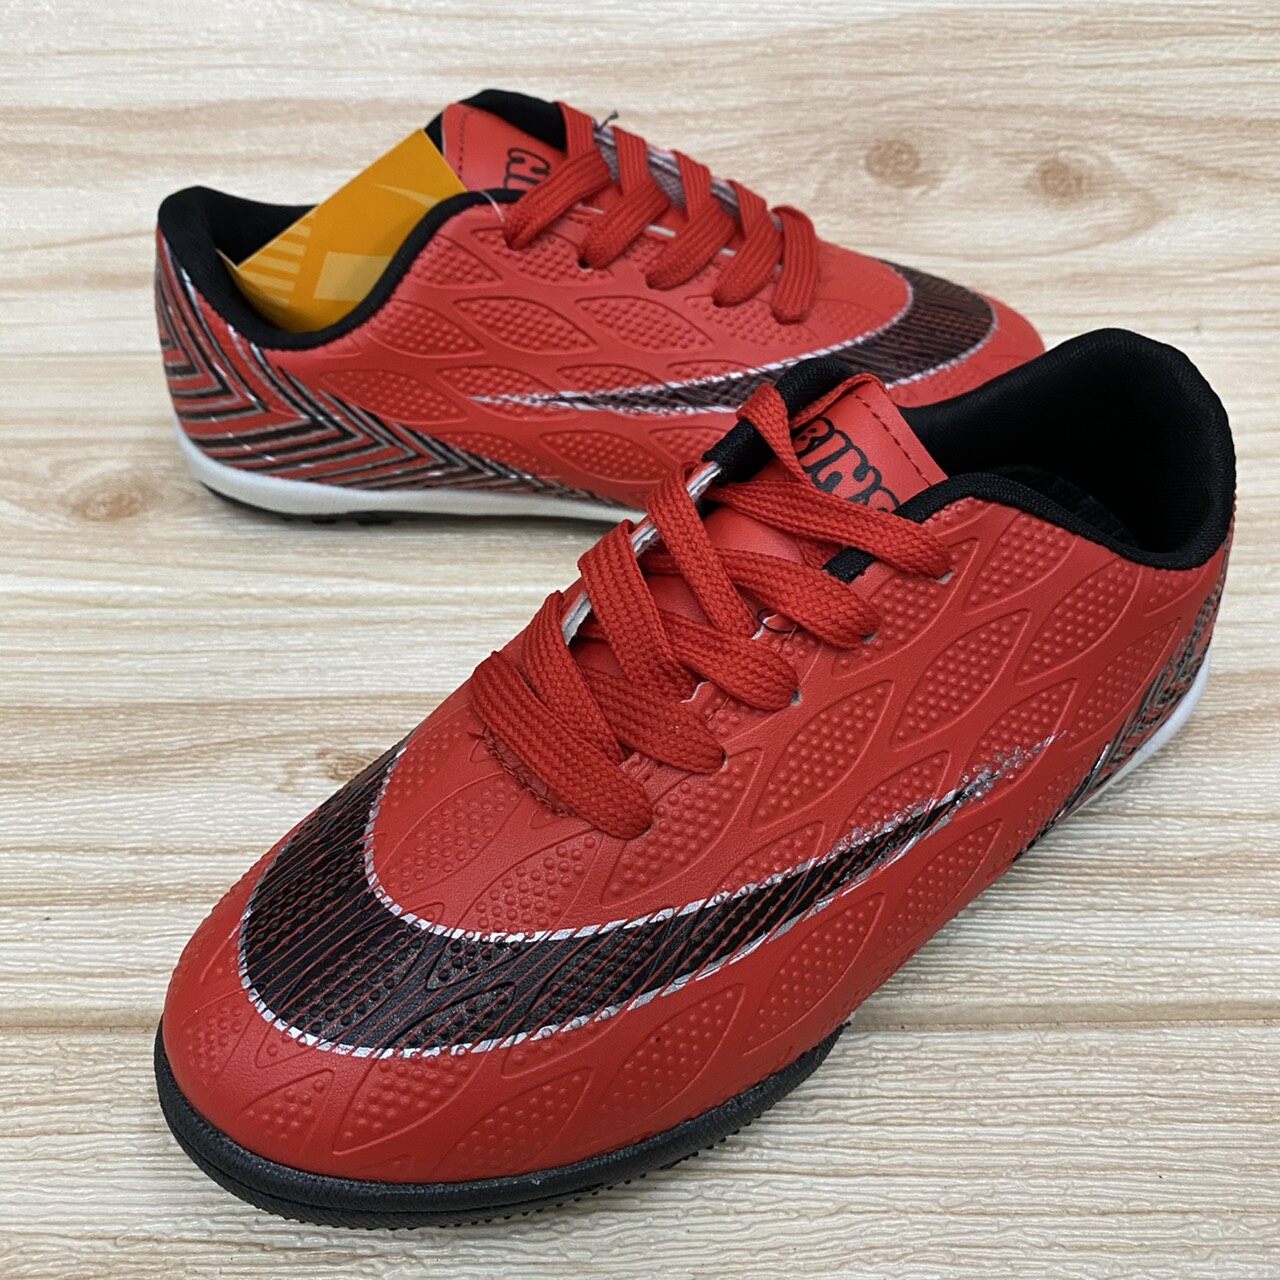 รองเท้าฟุตซอล BINSIN B31-671 (31-36)  ดำแดง/ดำทอง/แดงดำ/น้ำเงินส้ม